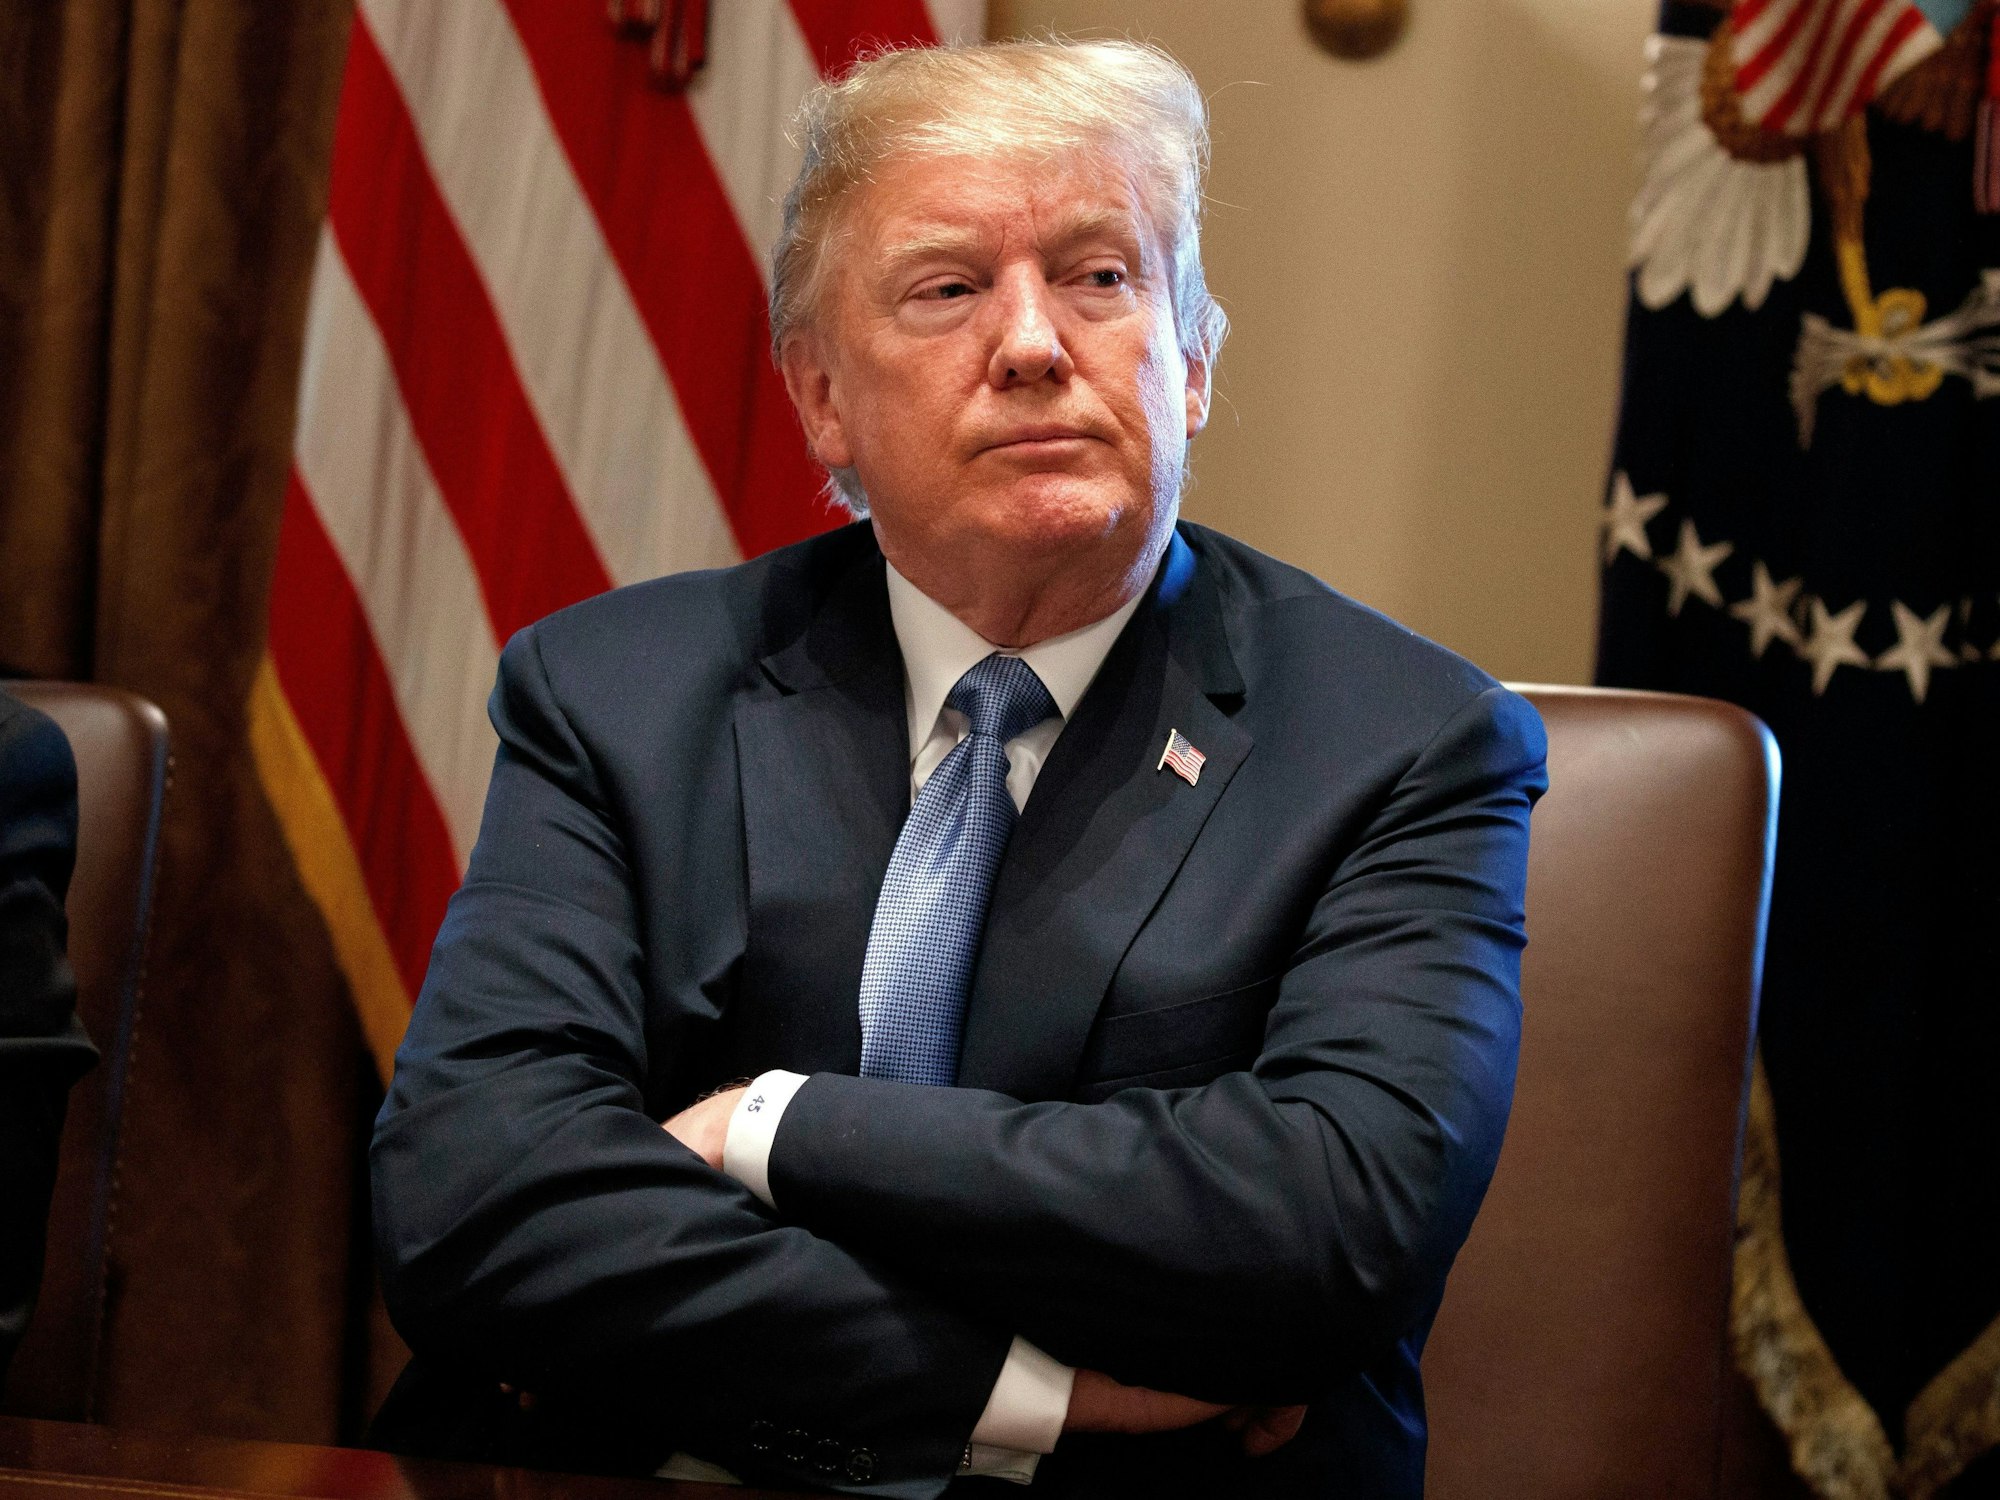 Donald Trump, damaliger Präsident der USA, verfolgt mit verschränkten Armen am 21.06.2018 eine Kabinettssitzung im Weißen Haus.